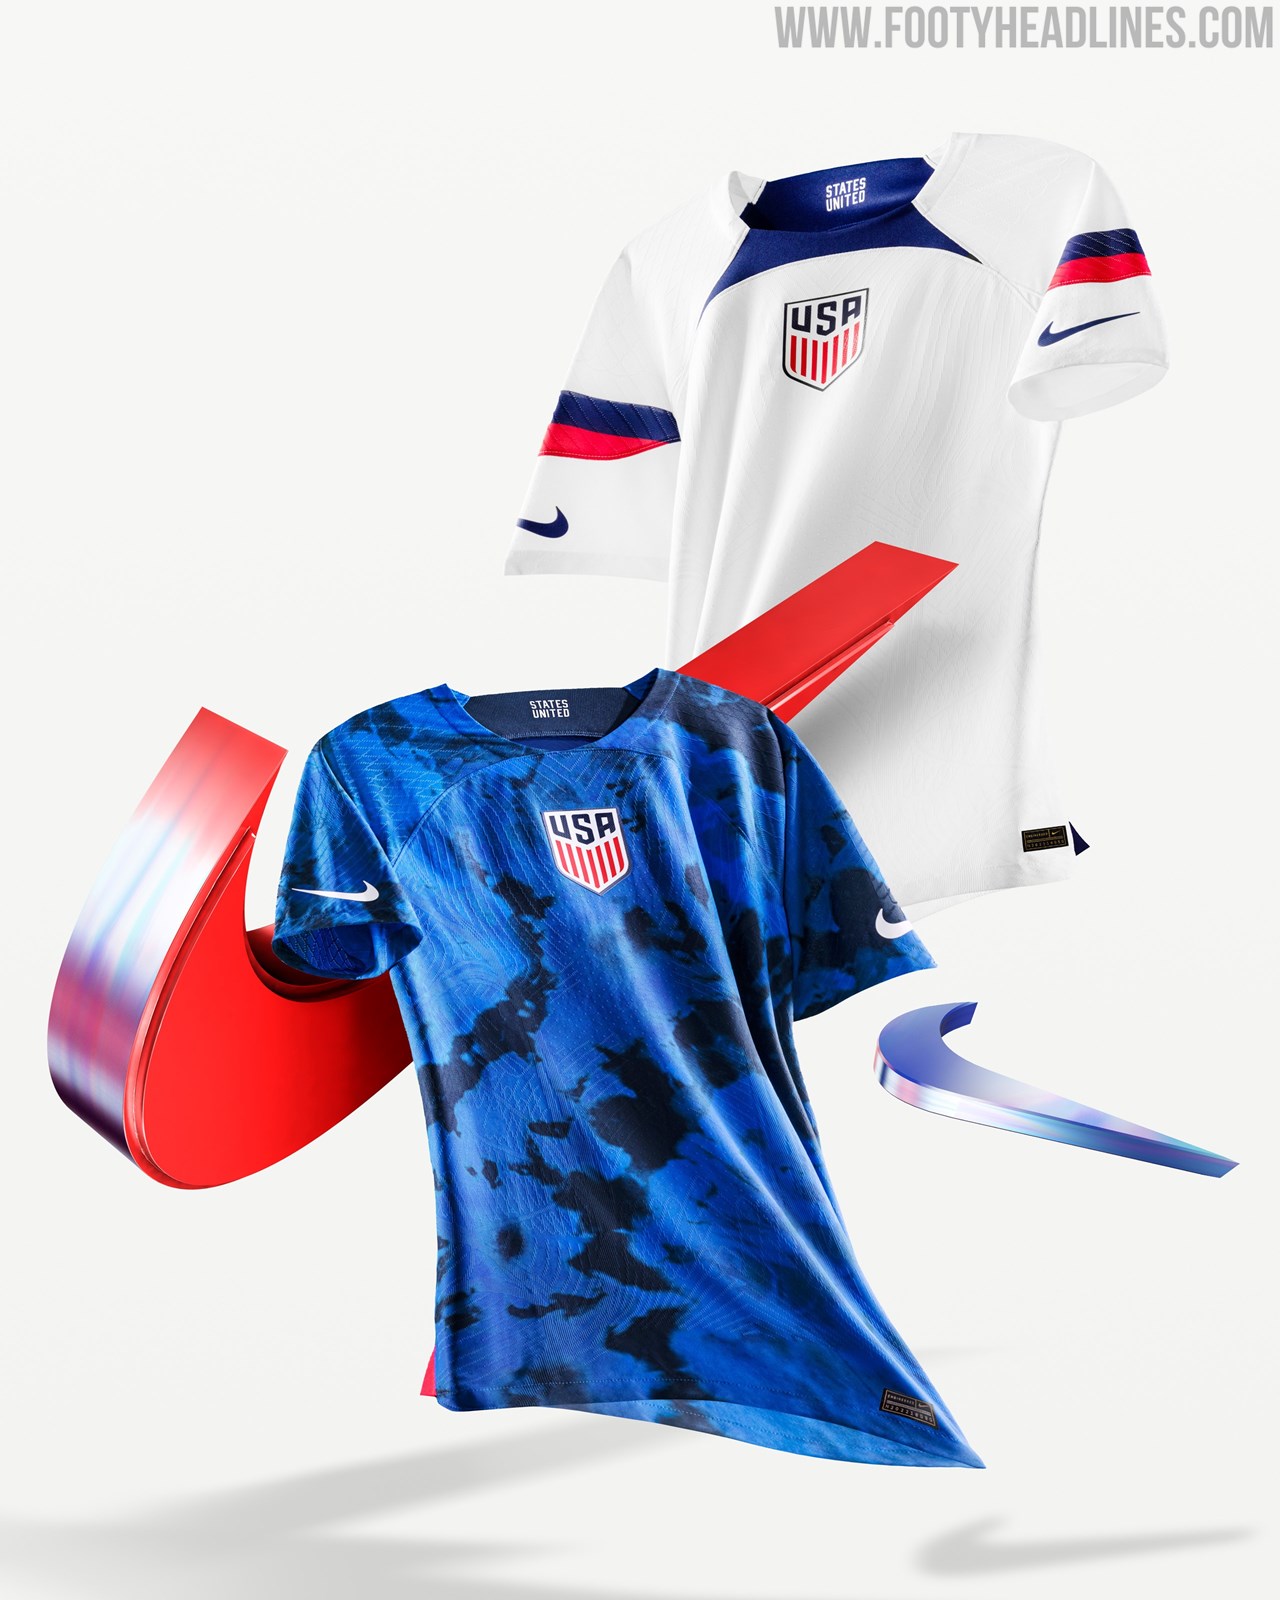 imgur.com  Football shirt designs, Sports jersey design, Football